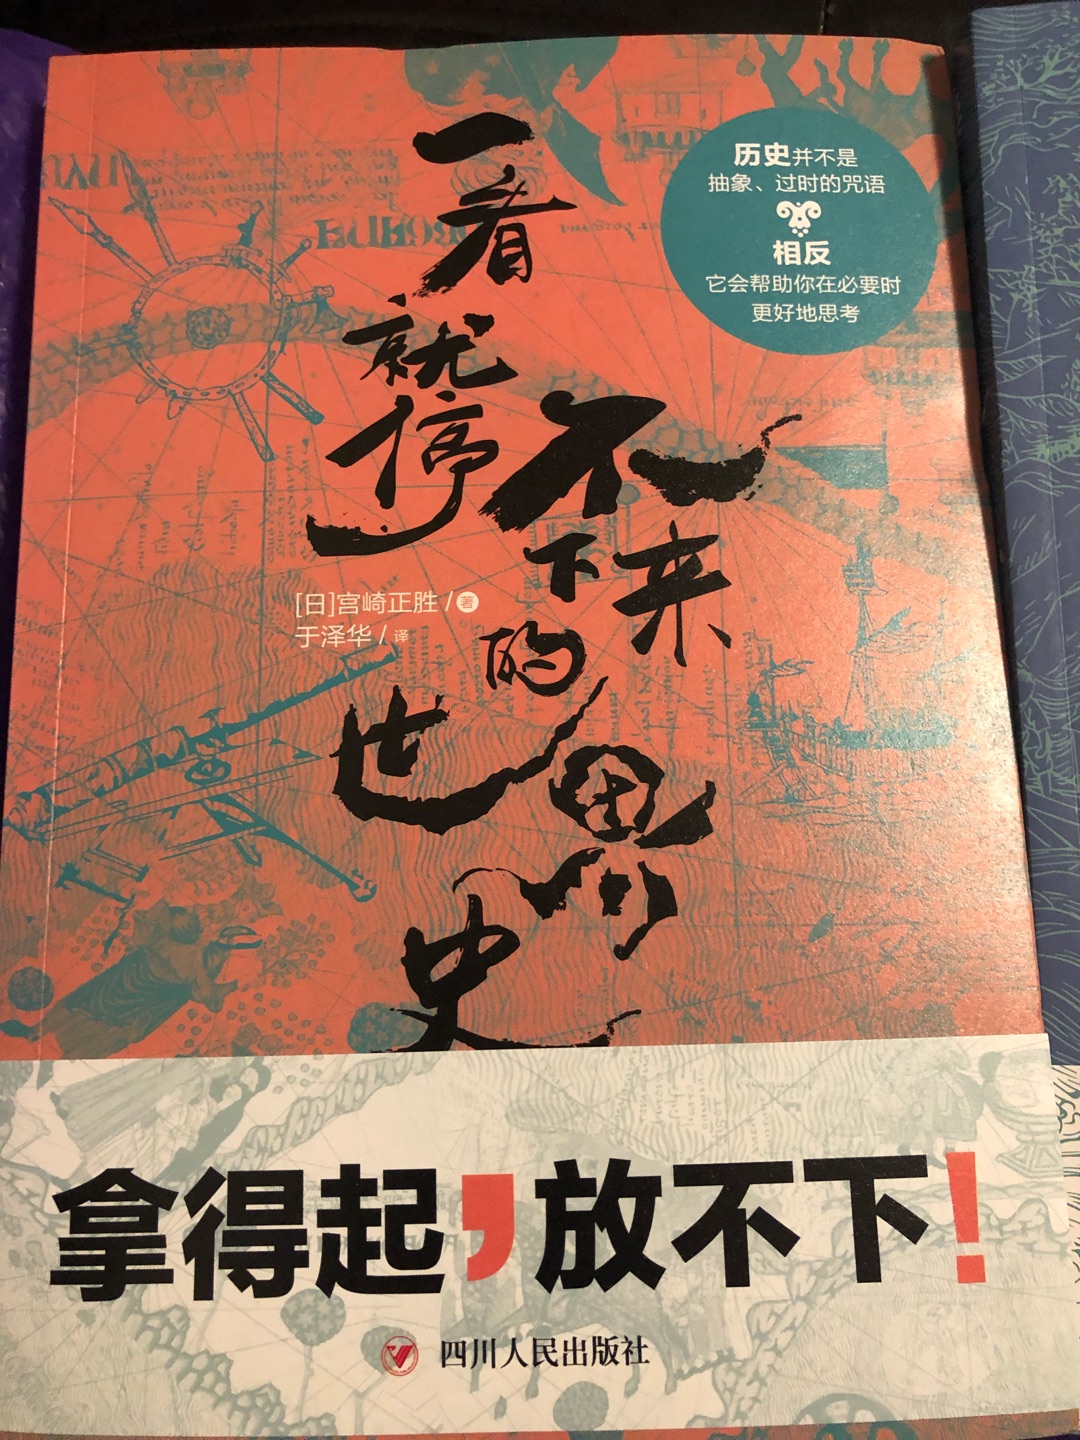 单买日本人写的世界史就行了。以为中国史也是日本人写的。大概翻了翻没啥意思。